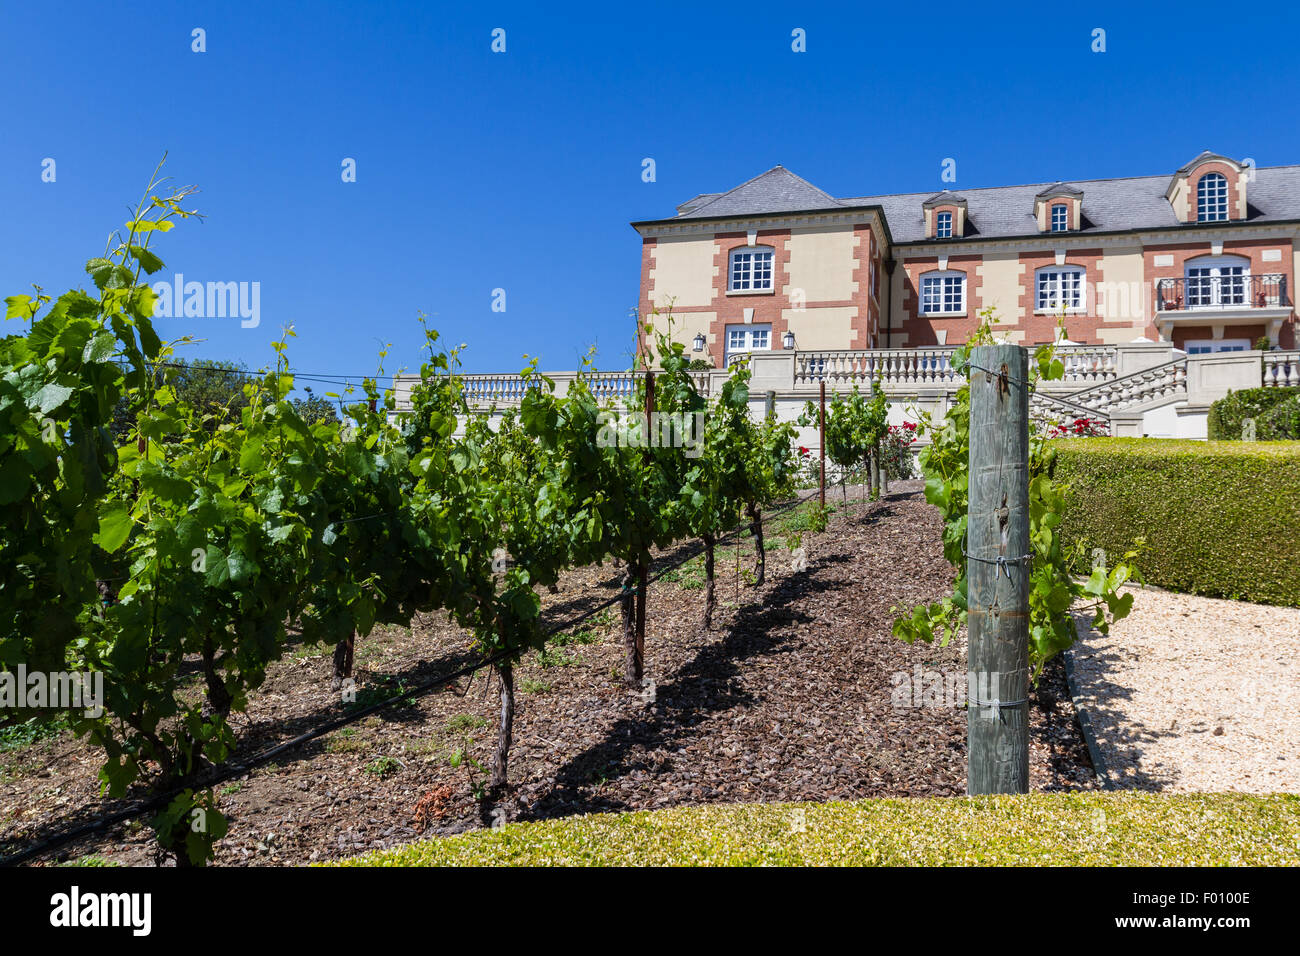 Napa Valley, California - 12 Maggio :bel castello Domaine Carneros un luogo per degustare ottimi vini, 12 maggio 2015 Napa Valley, Cali Foto Stock